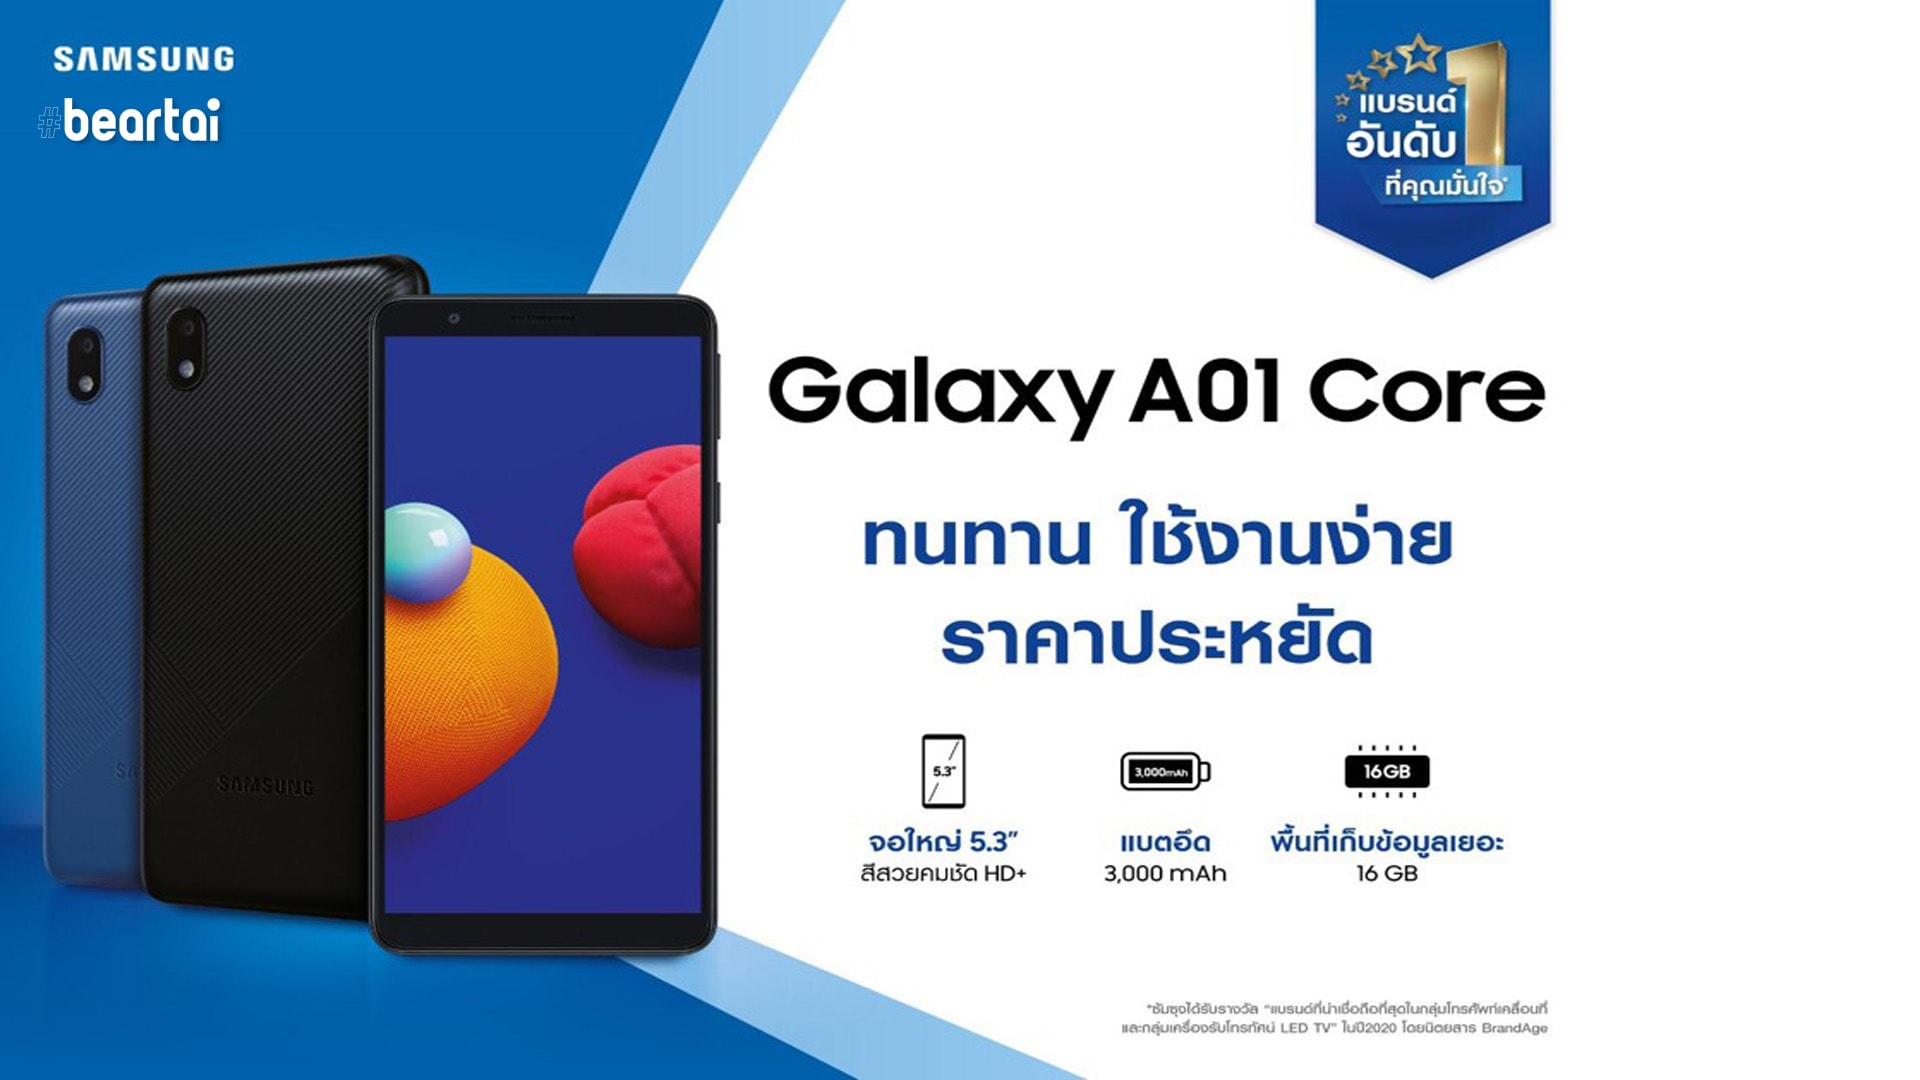 Samsung เปิดตัว Galaxy A01 Core กล้อง 8MP ทนทาน ใช้งานง่าย ราคาประหยัด ราคาเริ่มต้นเพียง 2,499 บาท